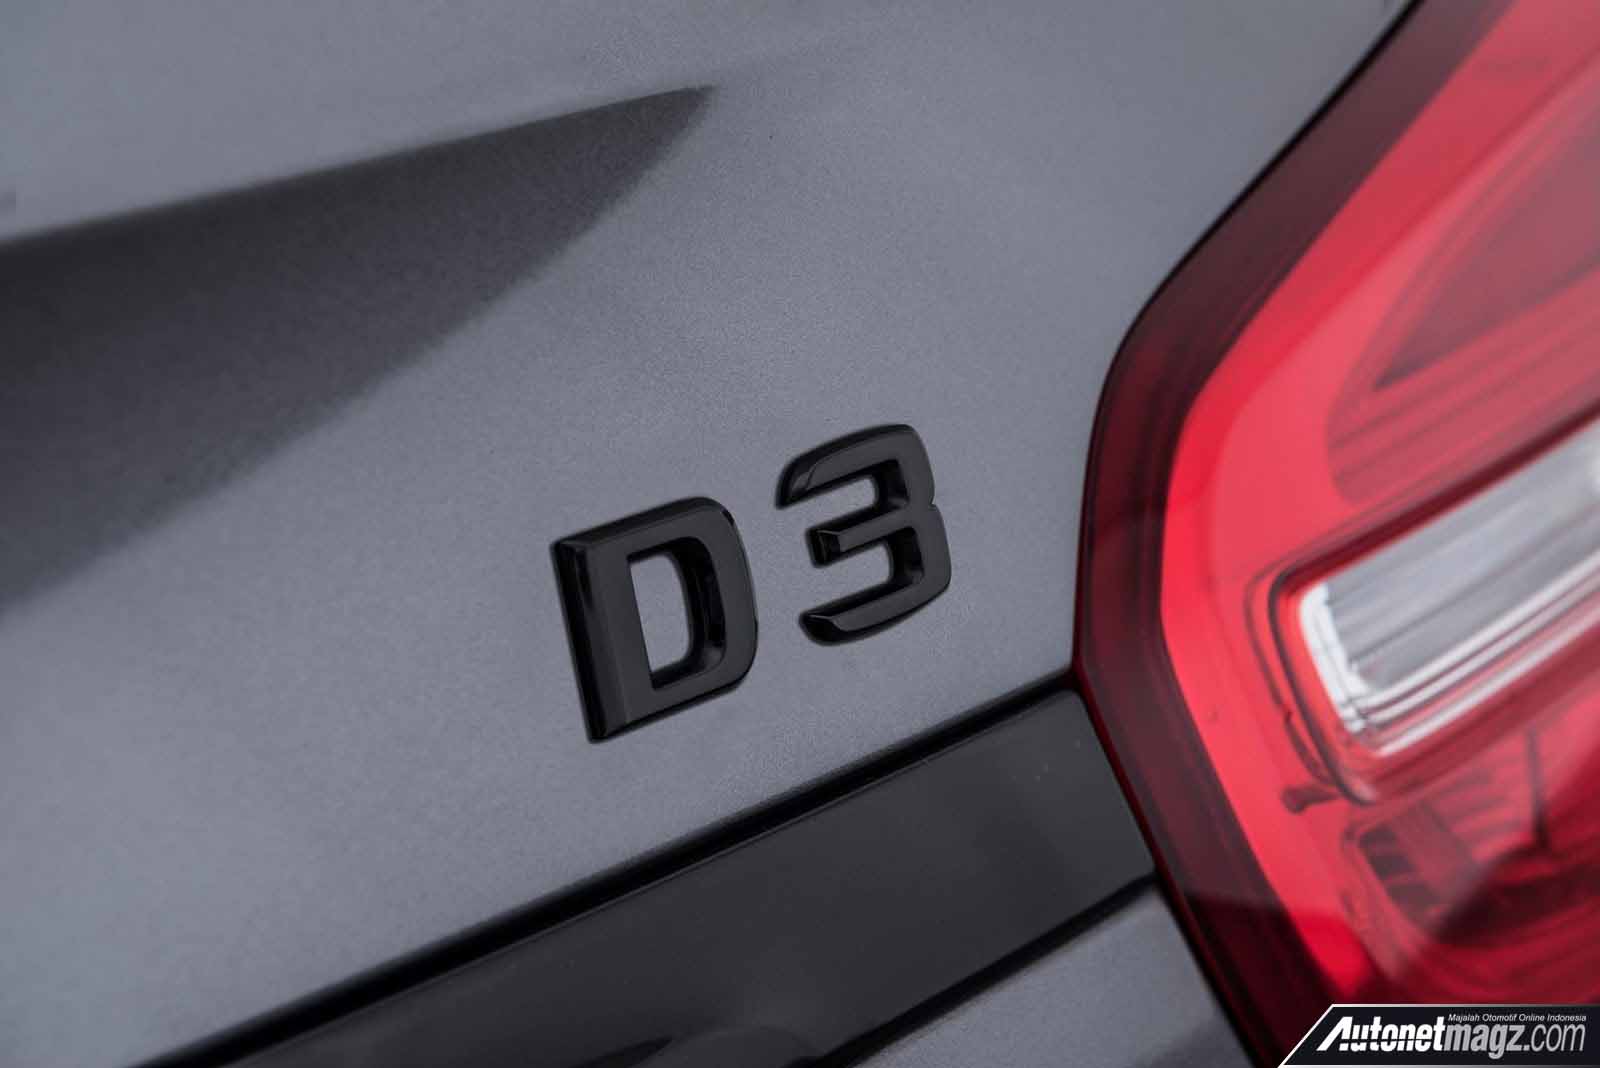 Berita, emblem Brabus Mercedes Benz GLA 220 CDI: Brabus Berikan Paket Kencang Untuk GLA 220 CDI